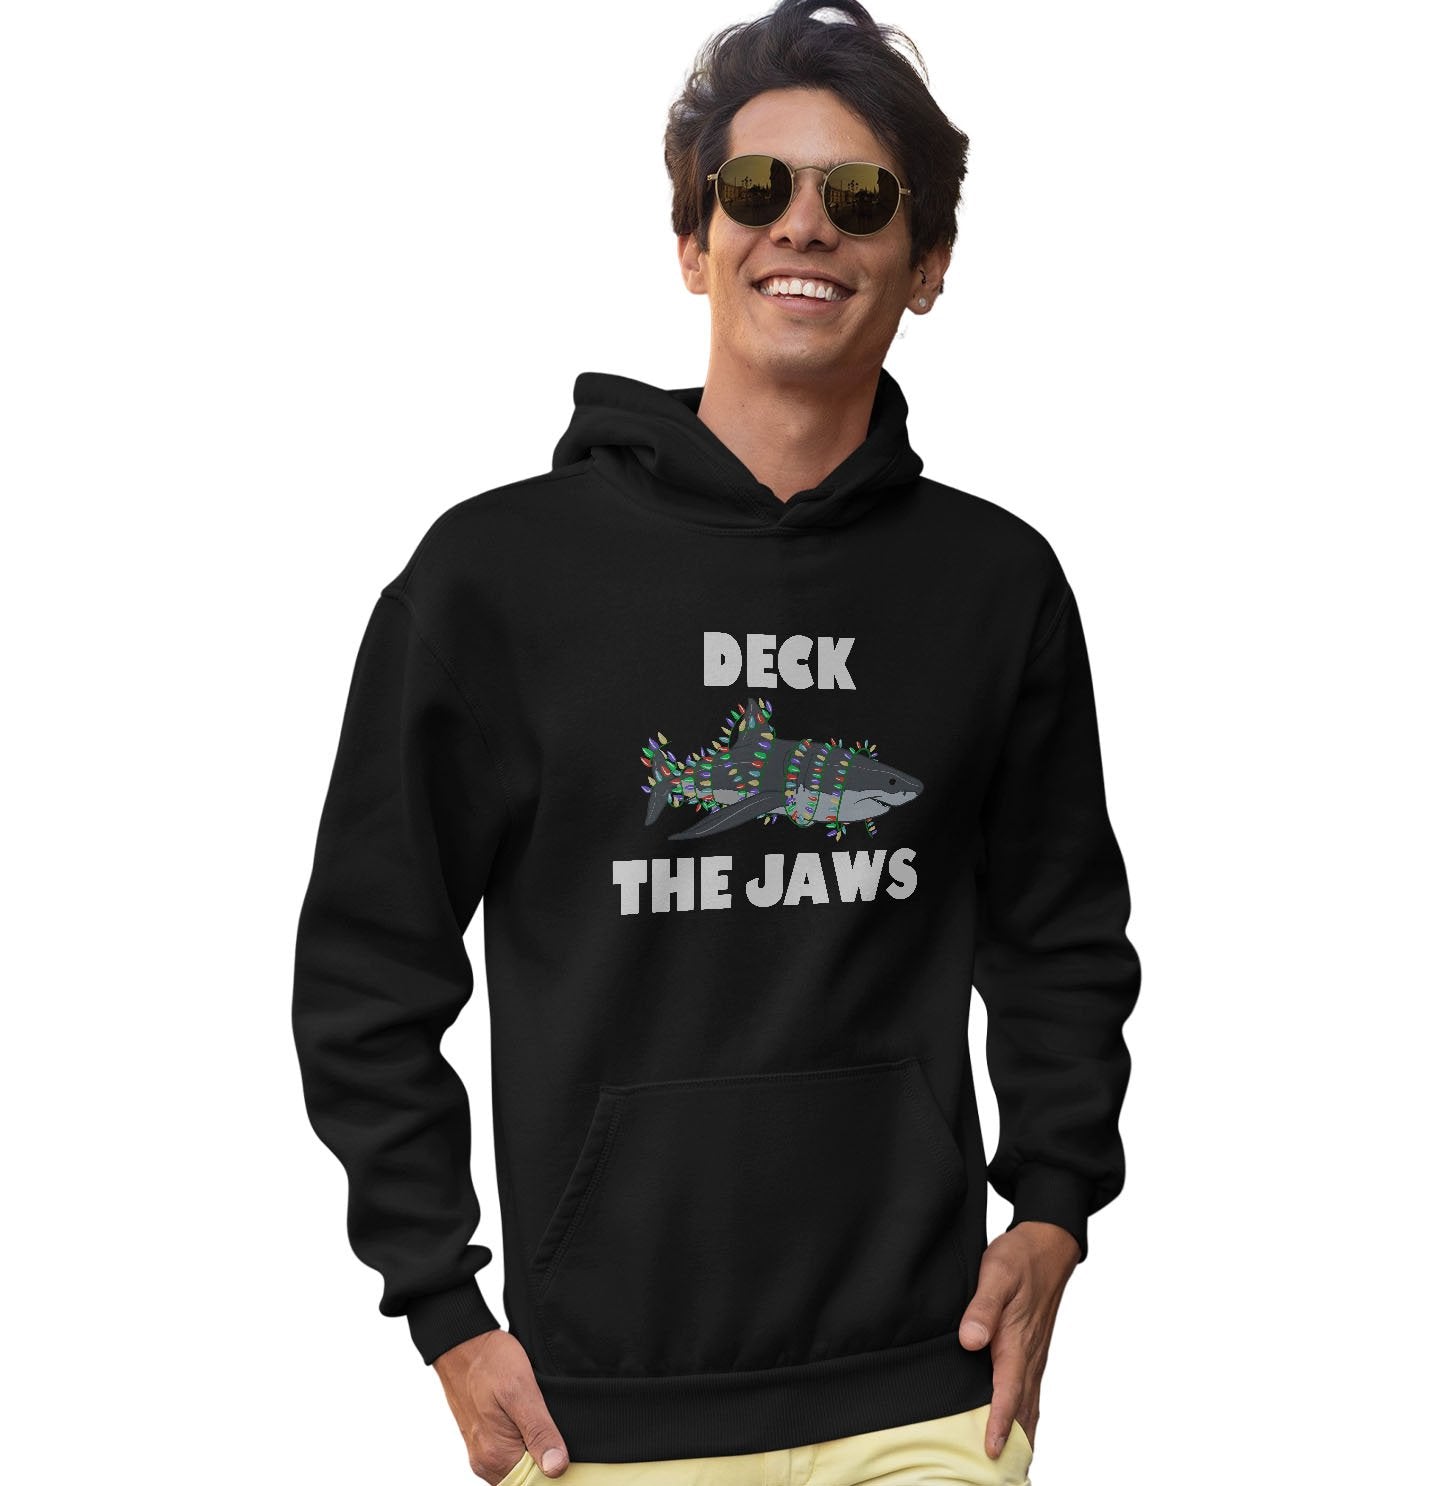 Deck the Jaws - Adult Unisex Hoodie Sweatshirt